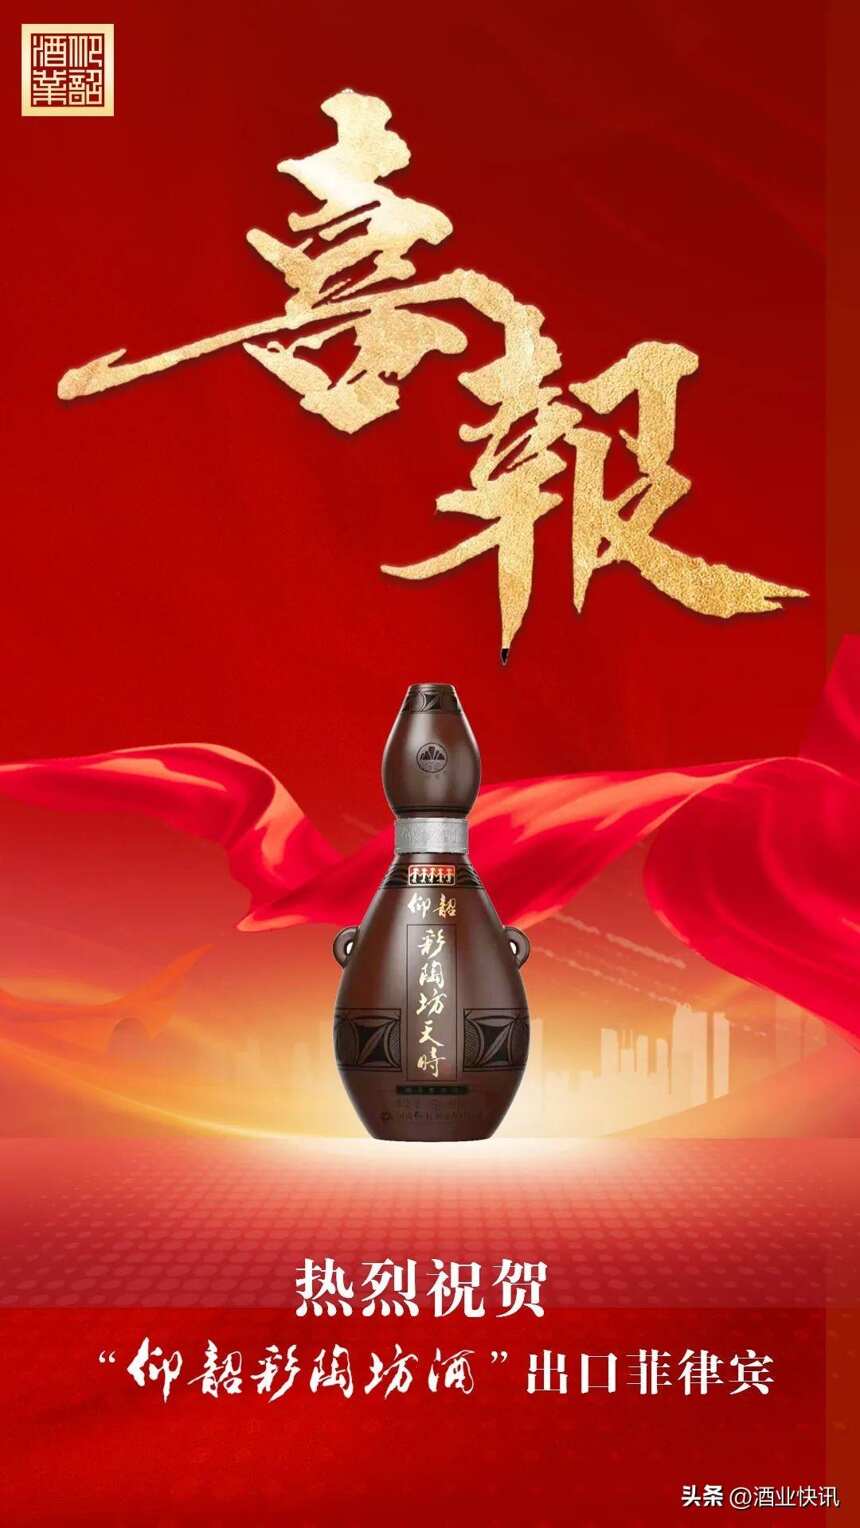 出口菲律宾！“仰韶彩陶坊酒”远渡重洋展现中国文化魅力